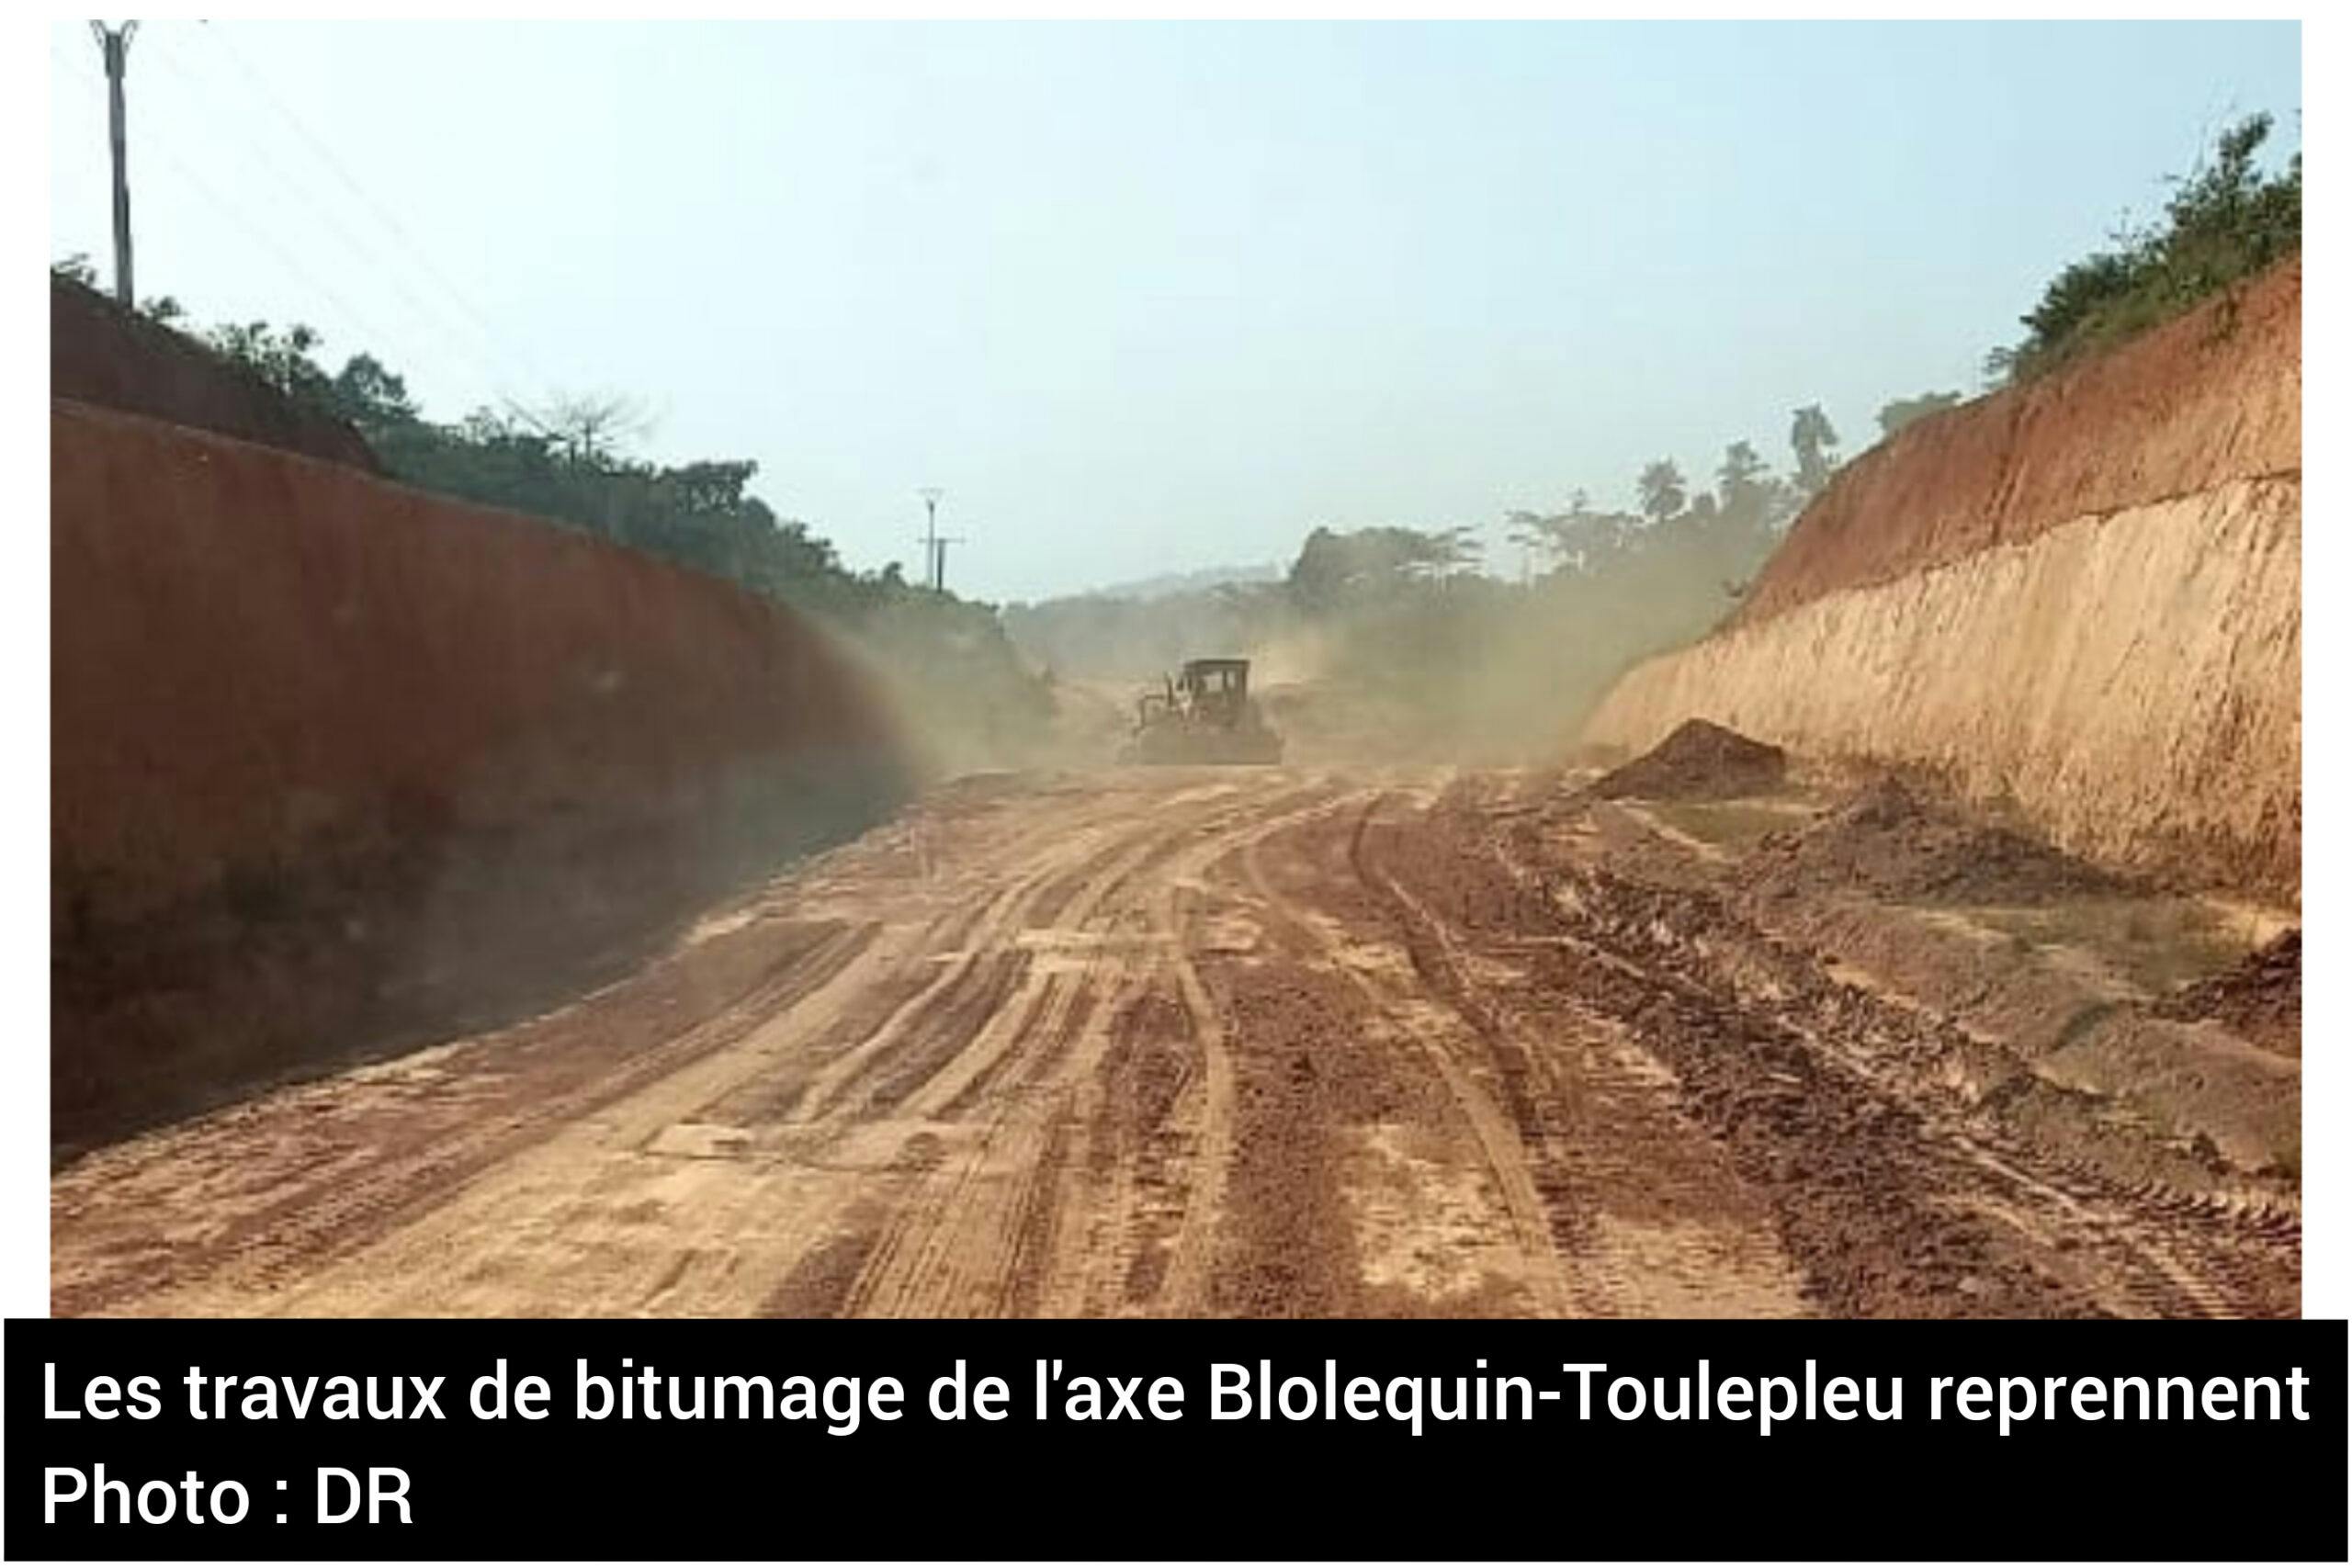 Les travaux de bitumage de l’axe Blolequin-Toulepleu reprennent (Région du Cavally, Côte d’Ivoire)